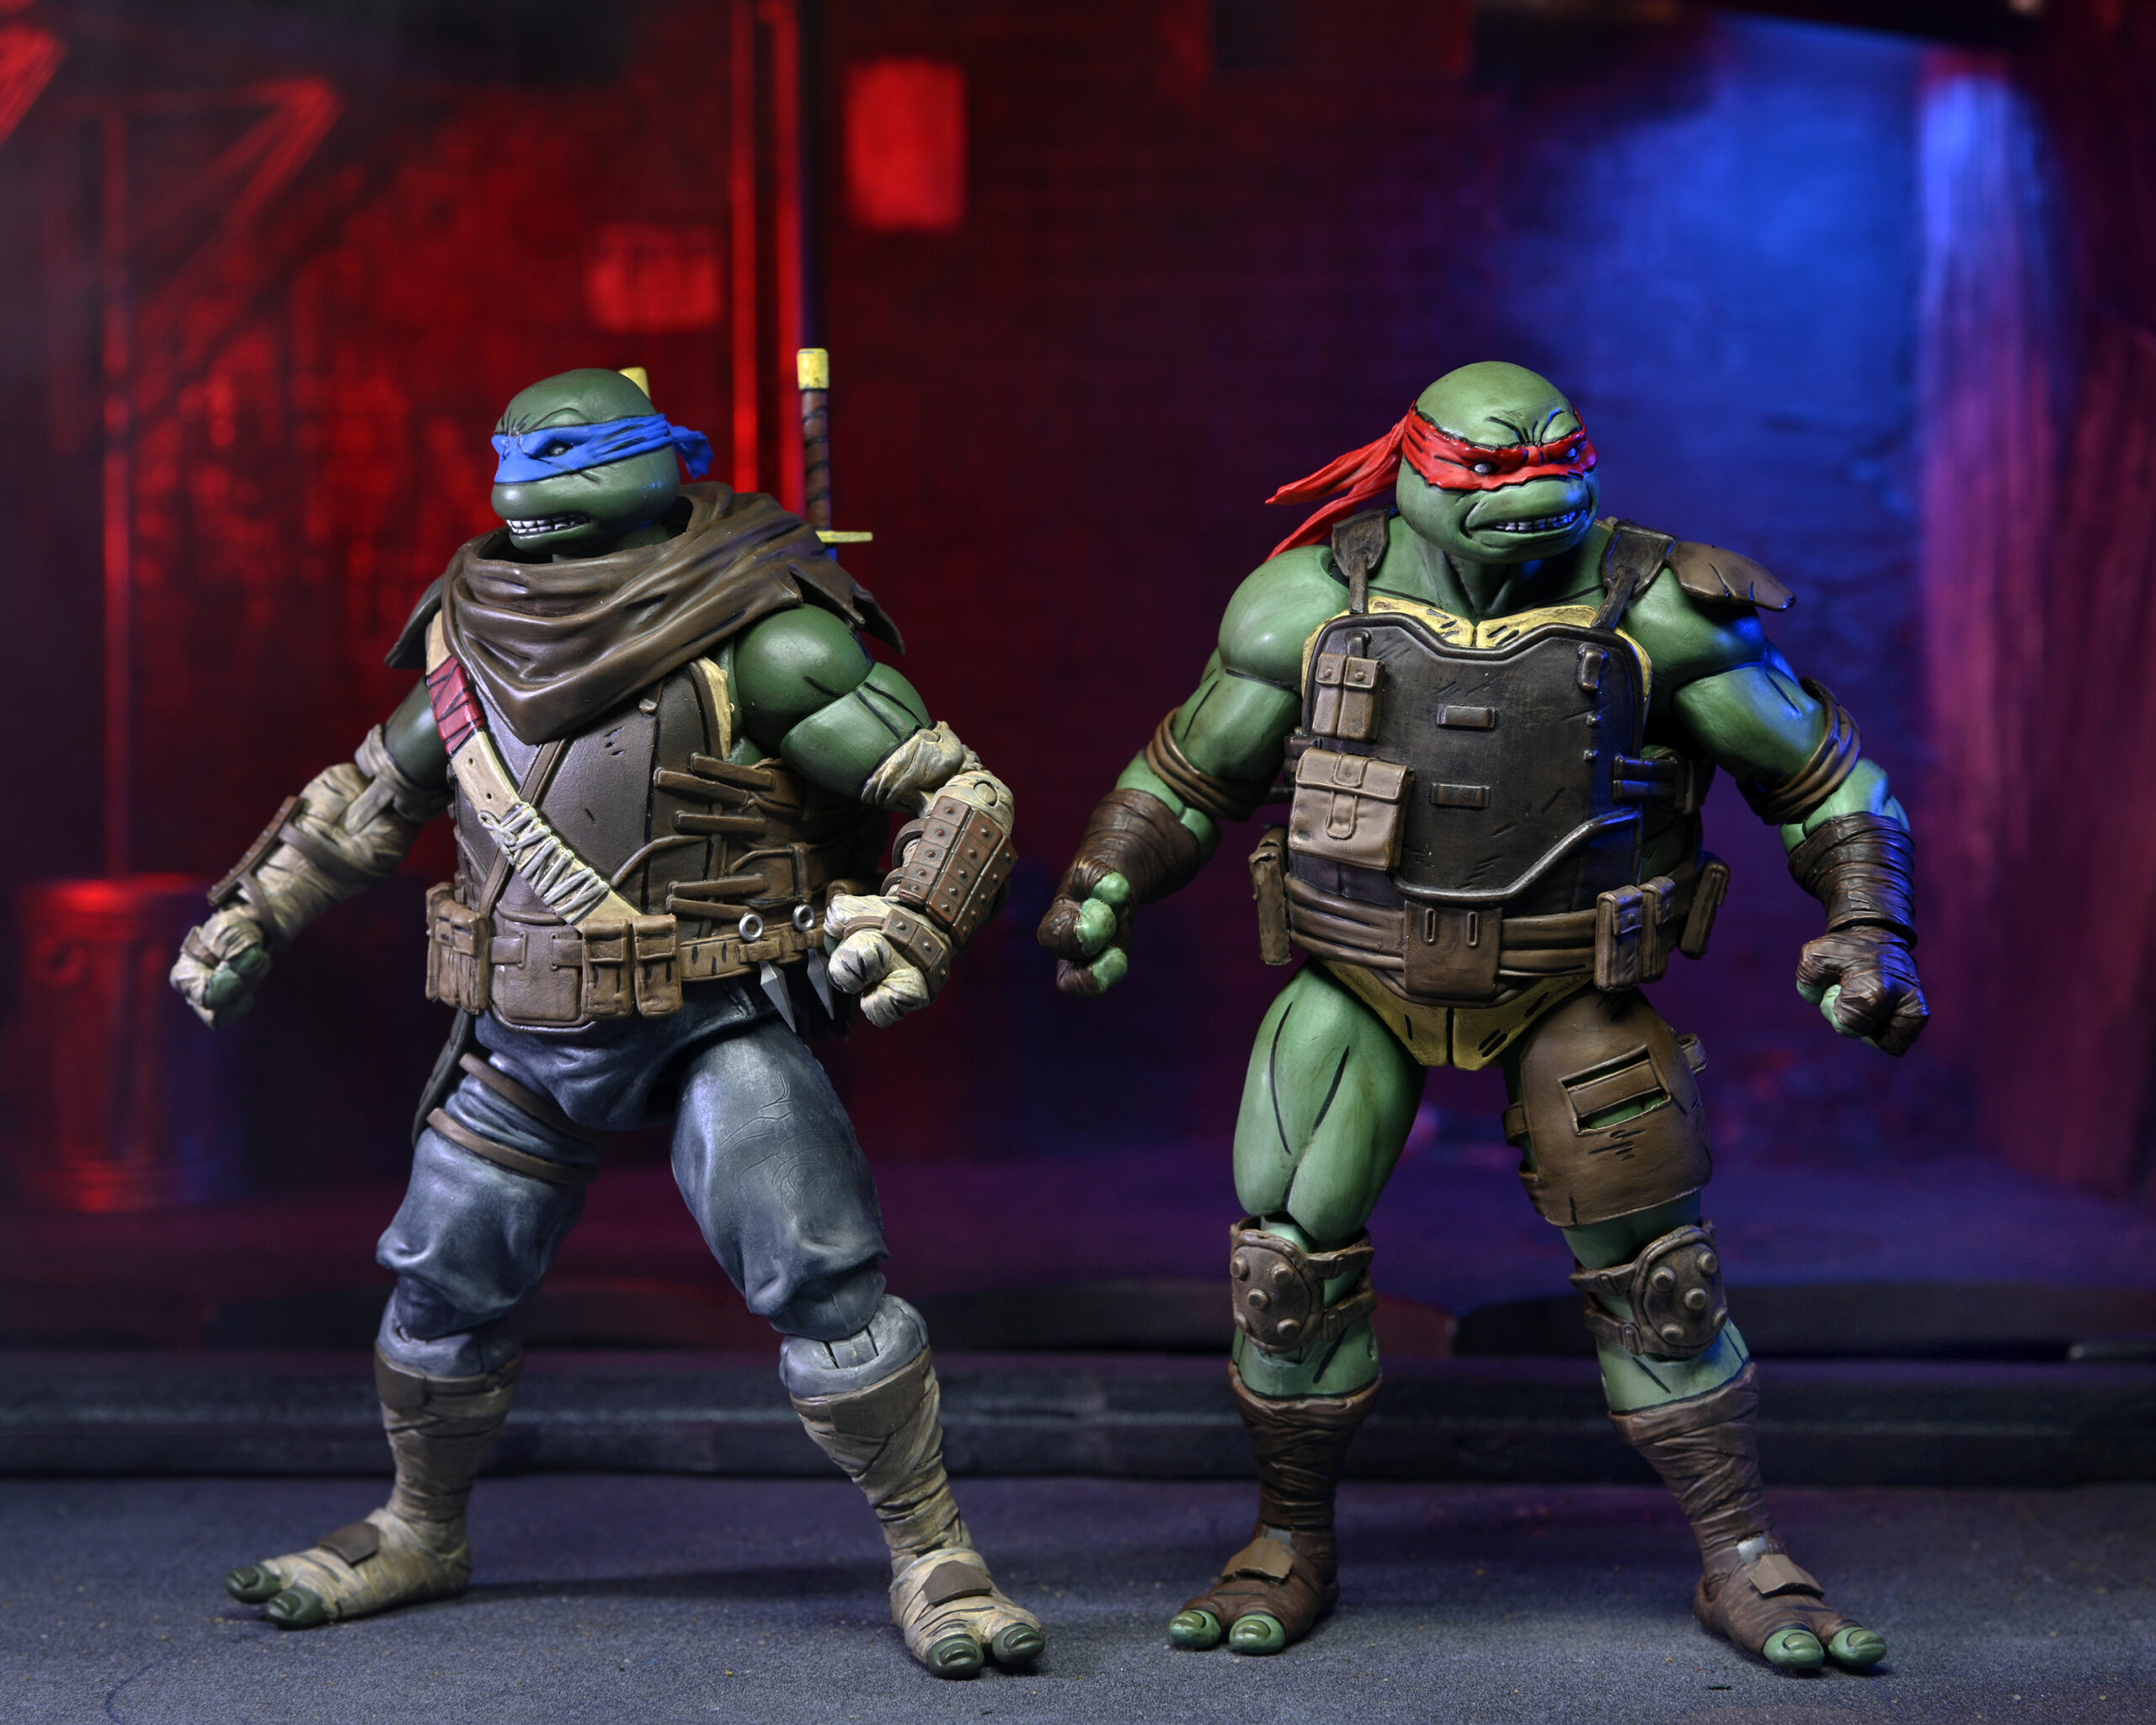 Teenage Mutant Ninja Turtles The Last Ronin 7” Scale Action Figure